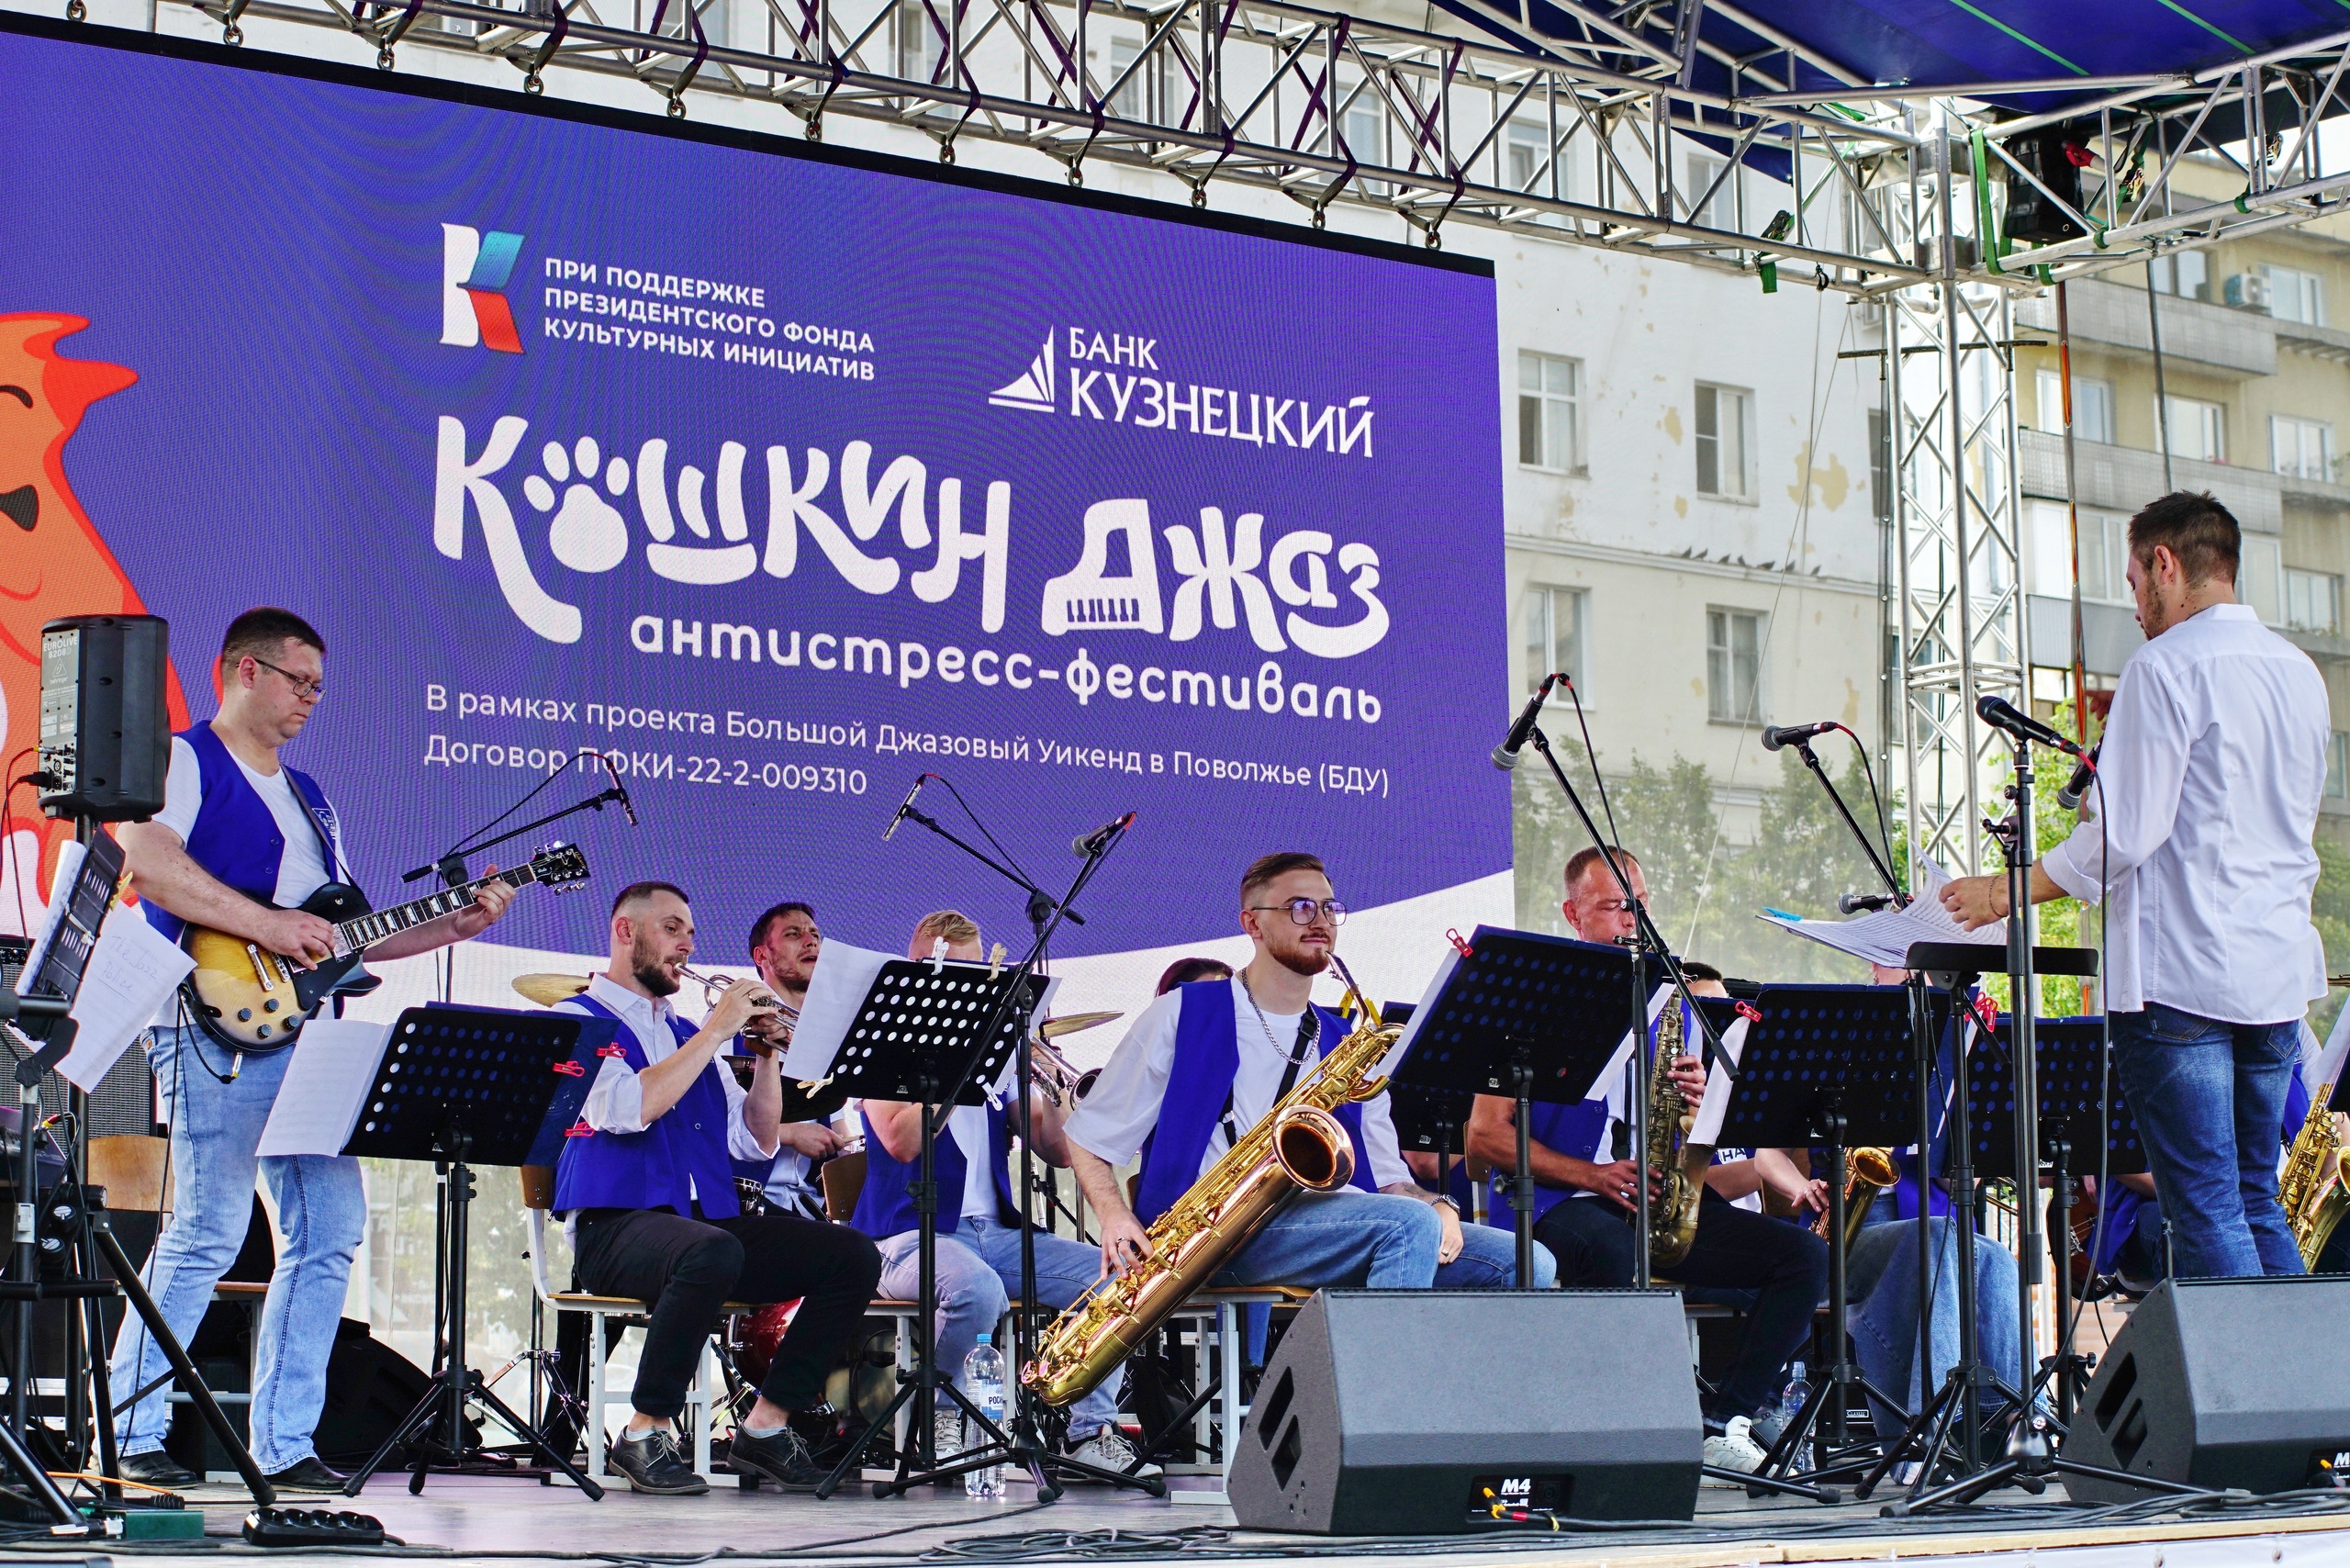 Джазовый оркестр Державинского выступил на всероссийском фестивале в Пензе фото анонса